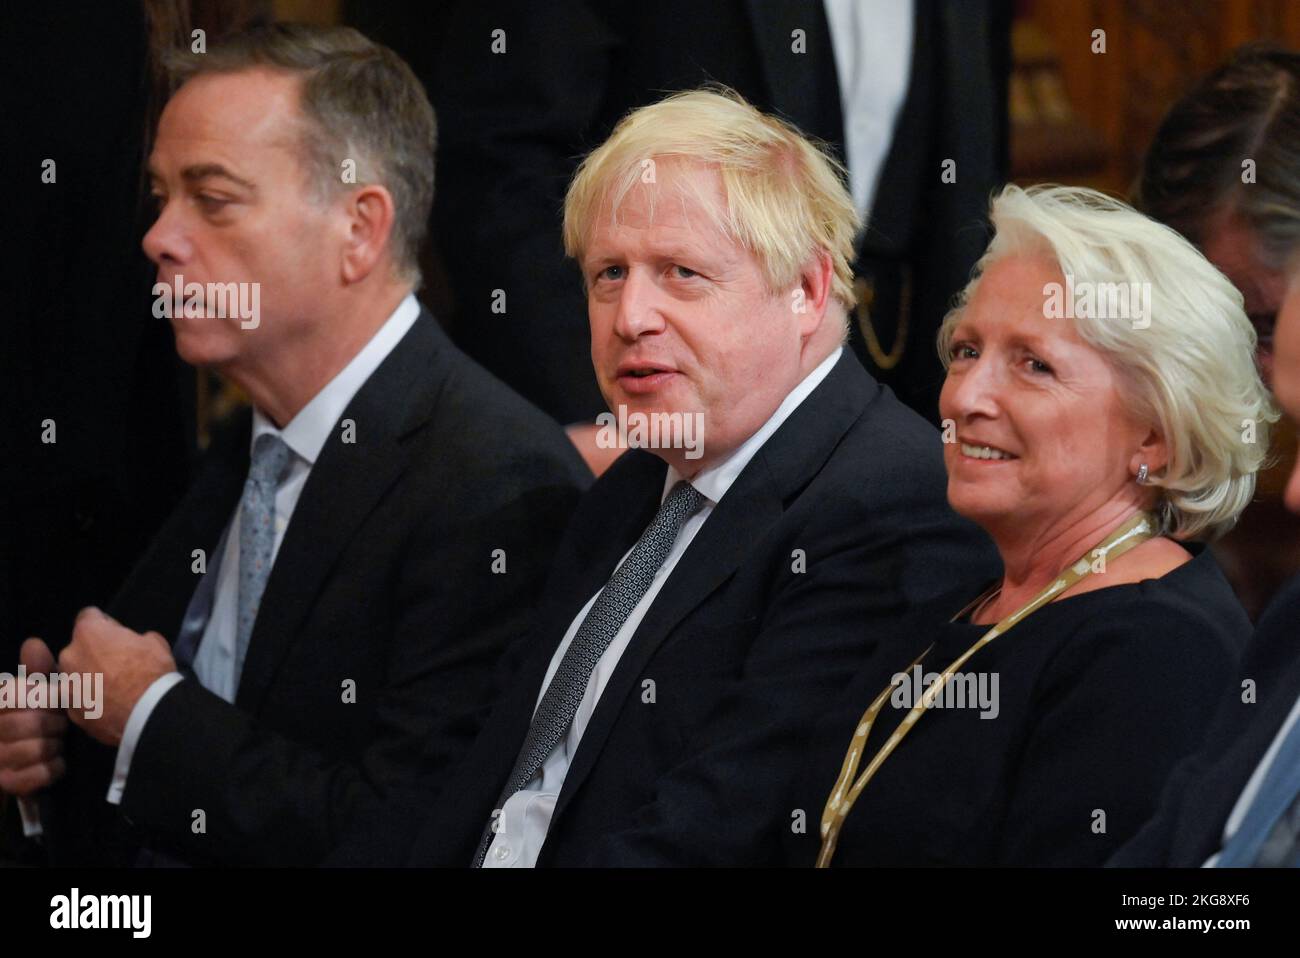 El ex primer ministro Boris Johnson, delante del presidente Cyril Ramaphosa de Sudáfrica, se dirigió a parlamentarios y compañeros en la Royal Gallery del Palacio de Westminster en Londres, como parte de su visita de Estado al Reino Unido. Fecha de la foto: Martes 22 de noviembre de 2022. Foto de stock